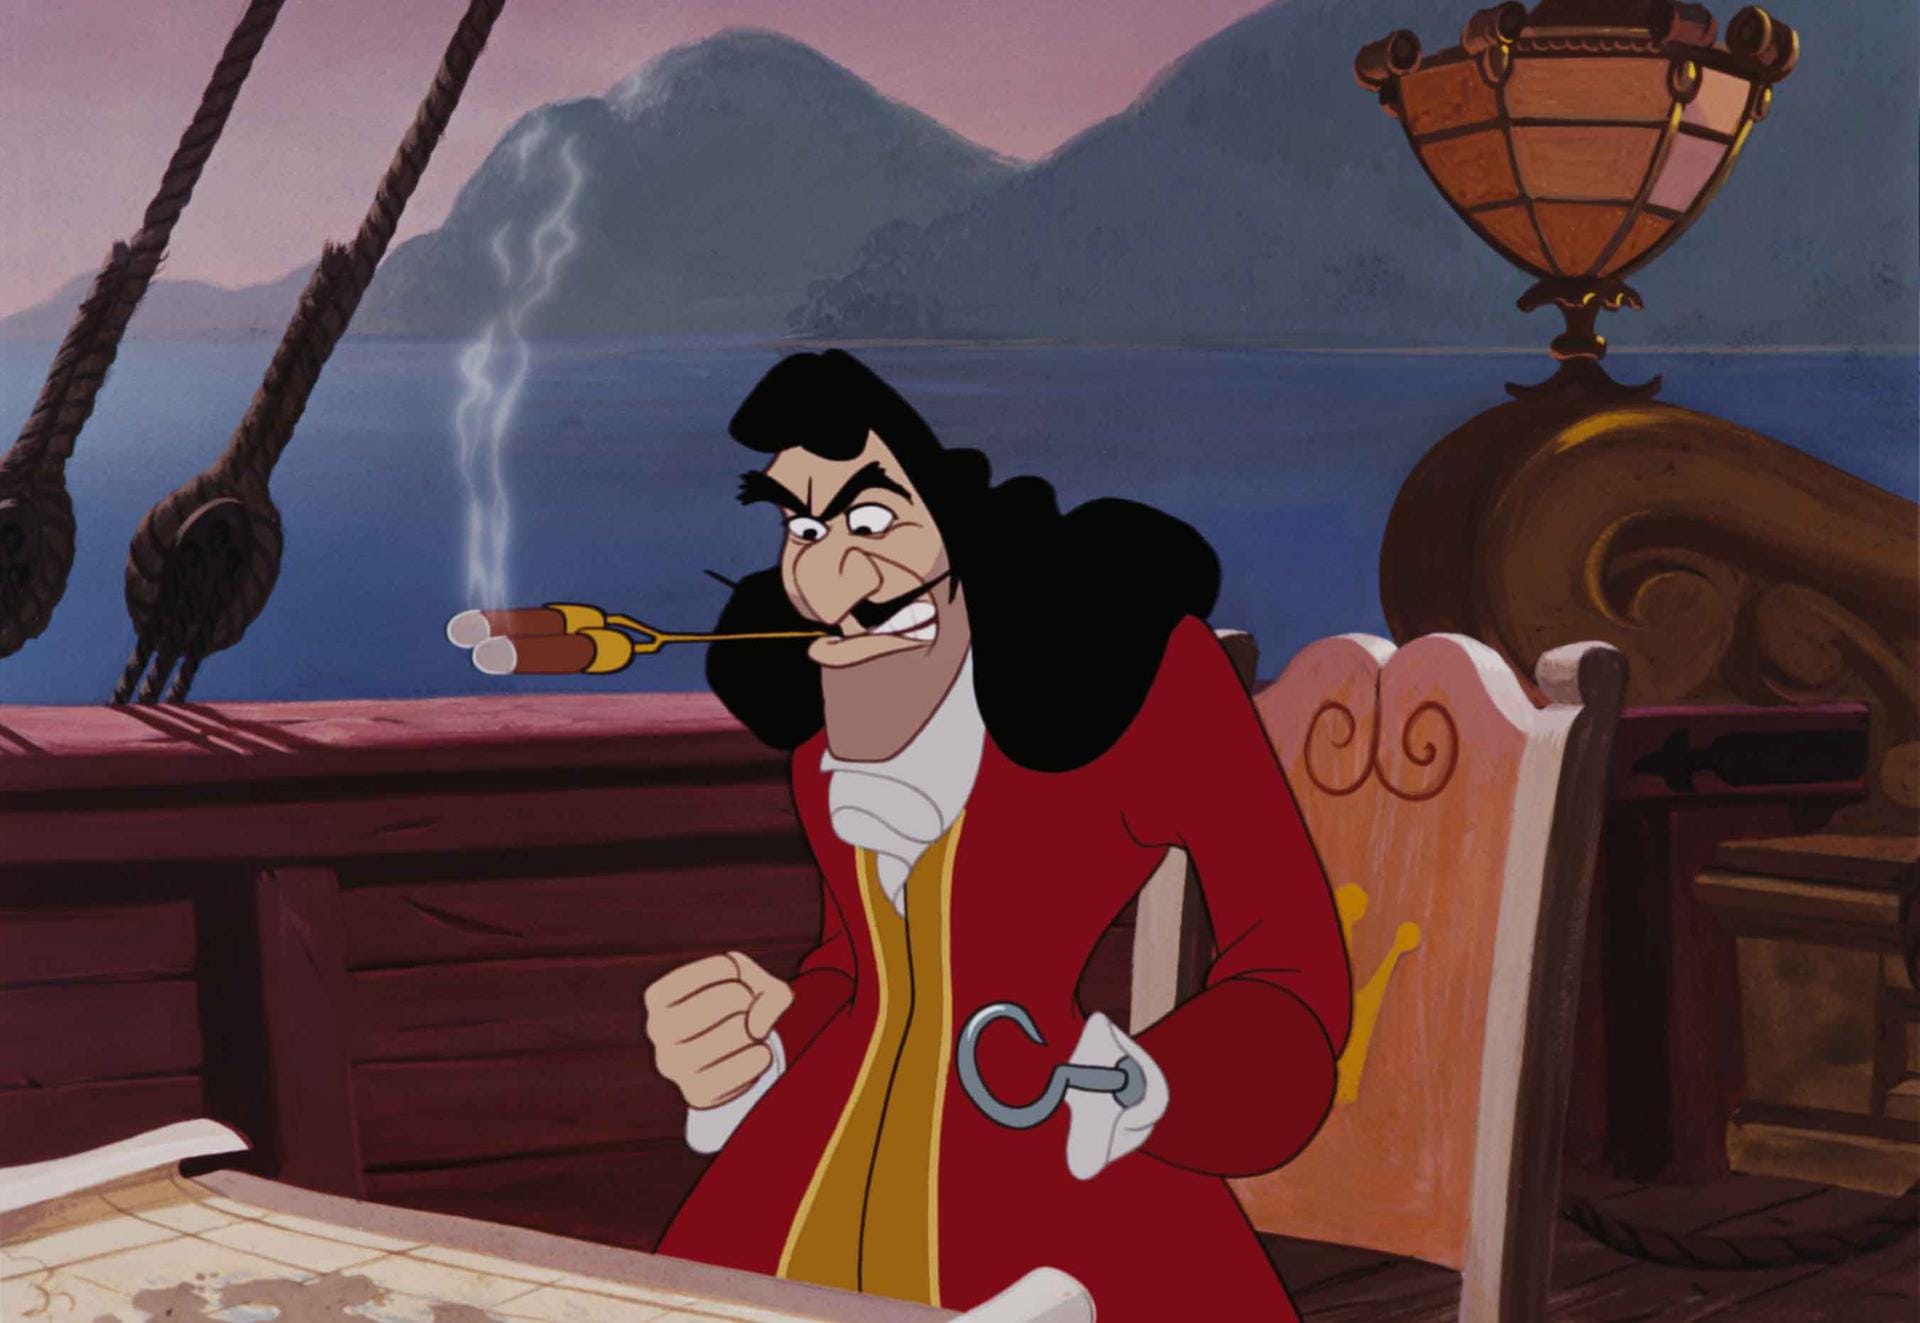 Platz 5: Für Captain Hook aus "Peter Pan" gibt es 45 Jahre für Piraterie, Mord, versuchten Mord und Freiheitsberaubung.